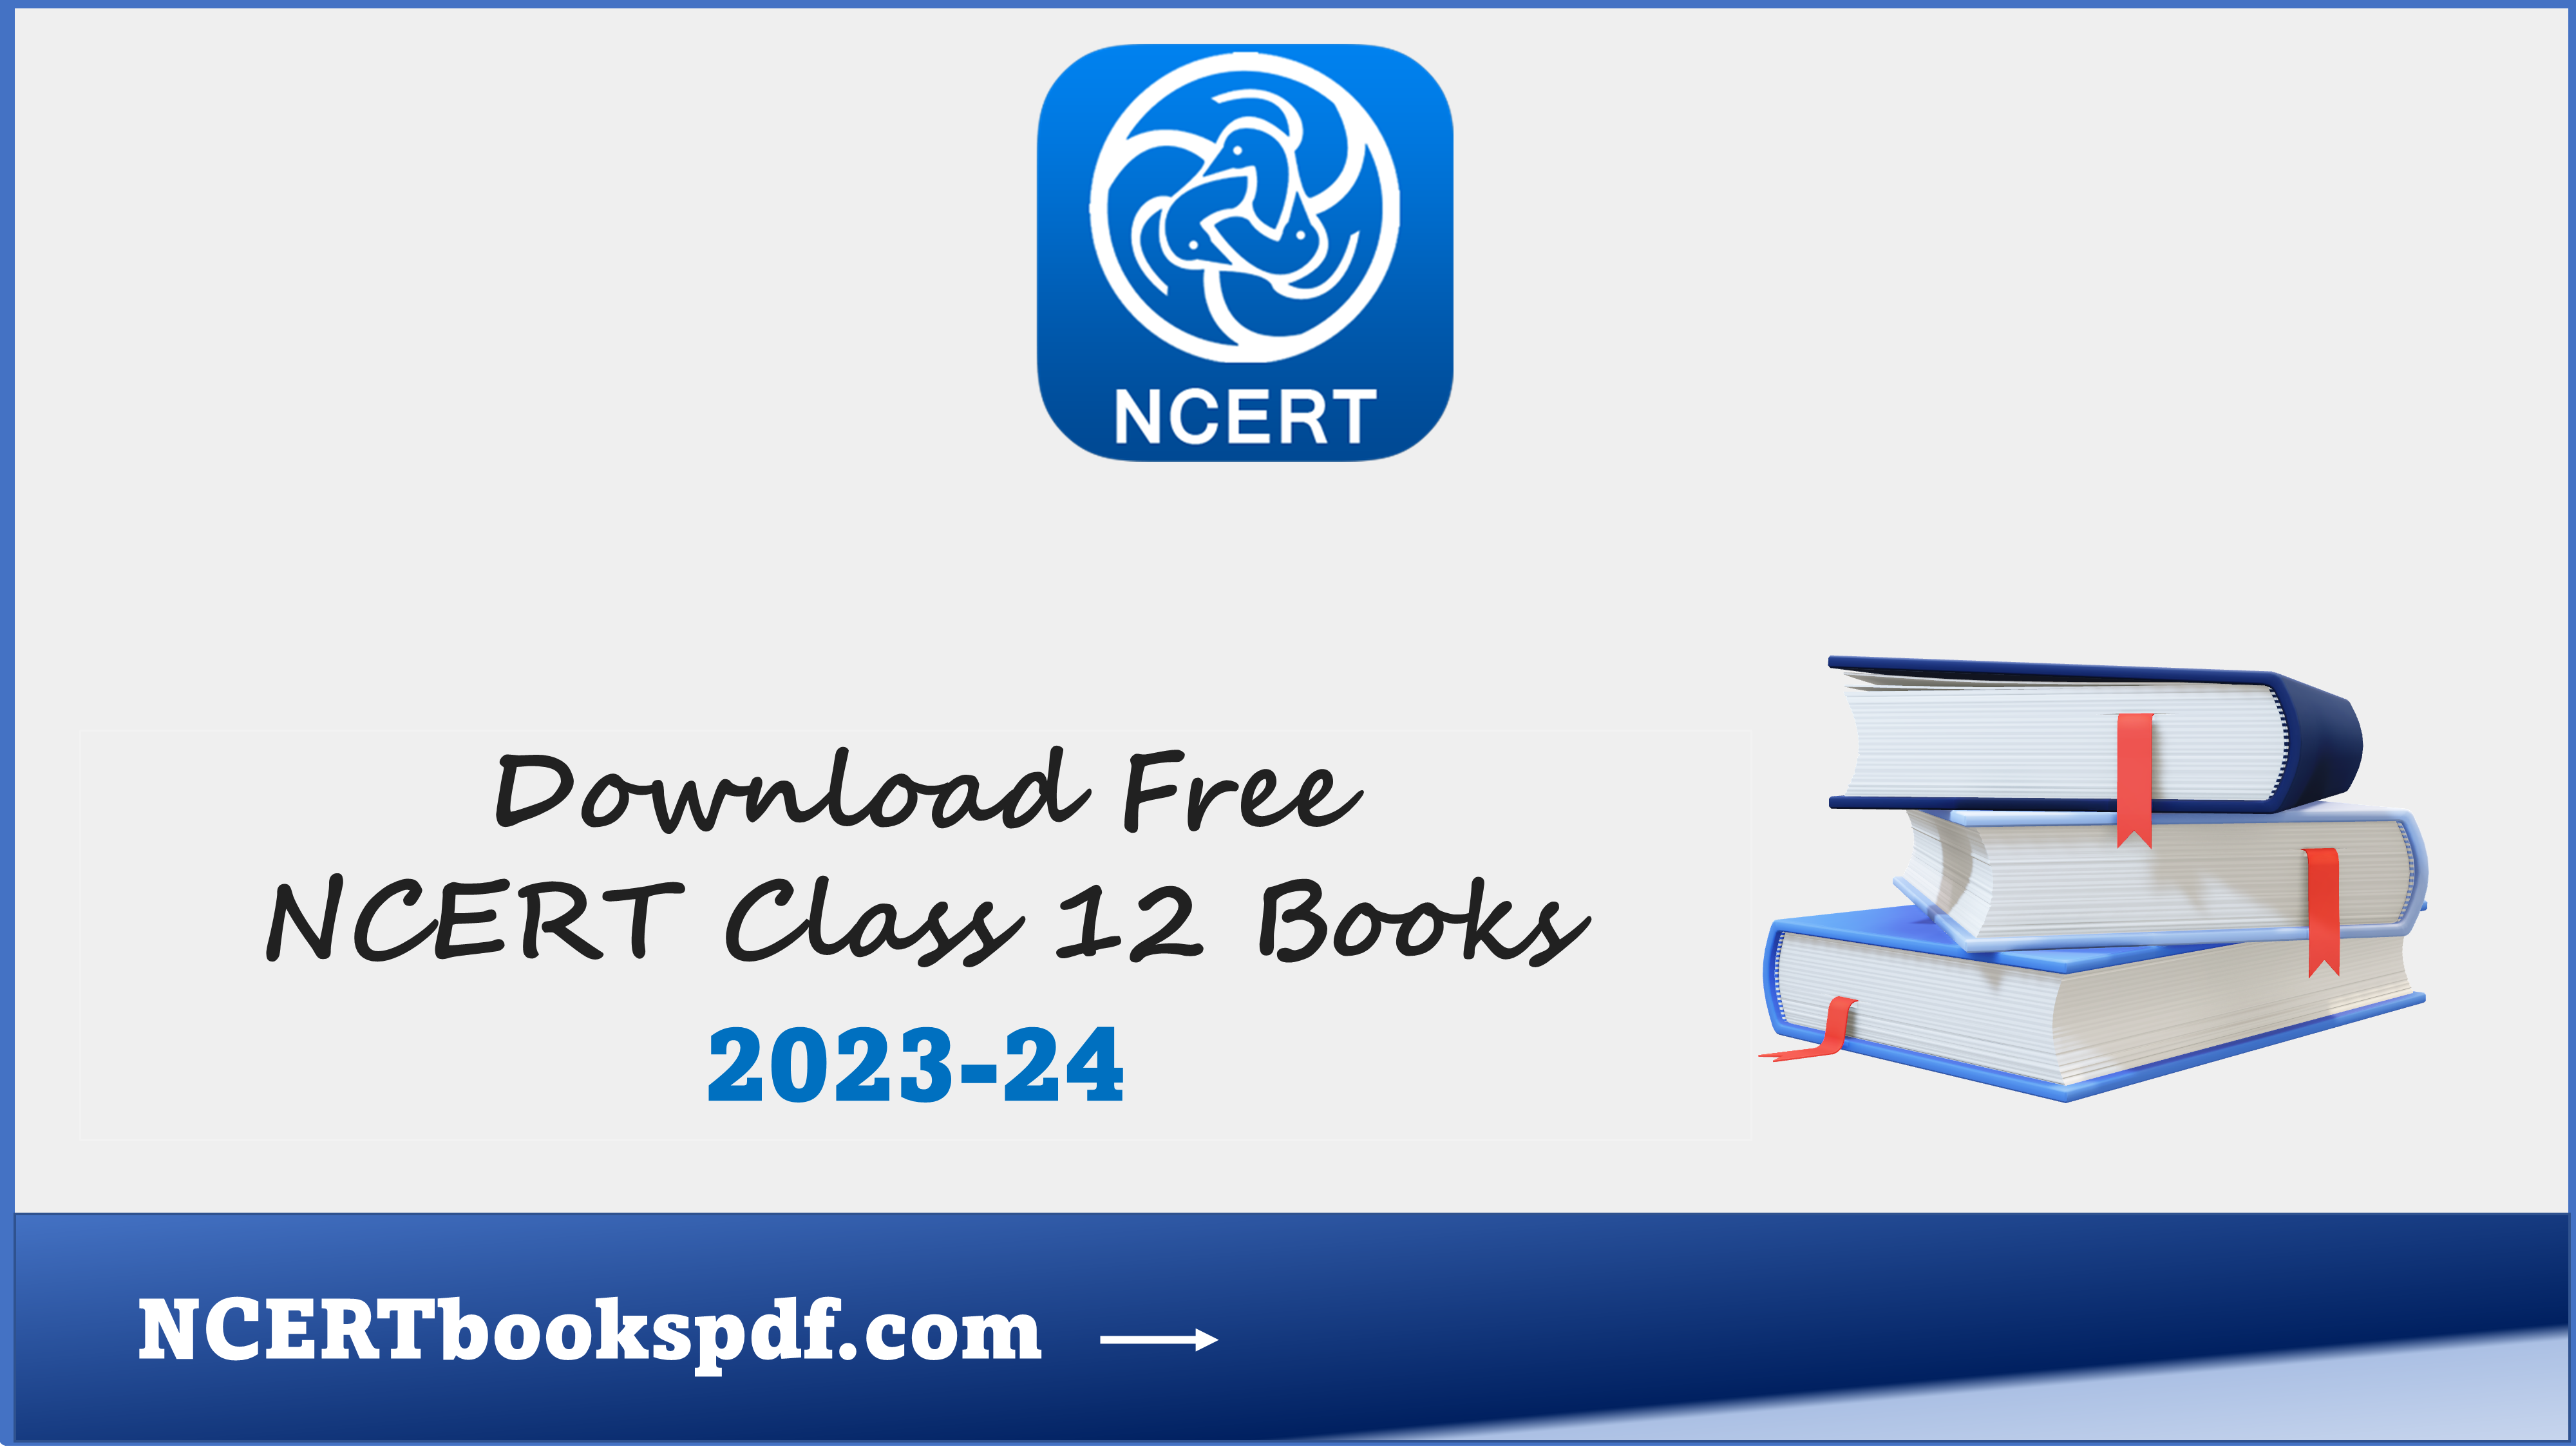 NCERT BOOKS CLASS 12